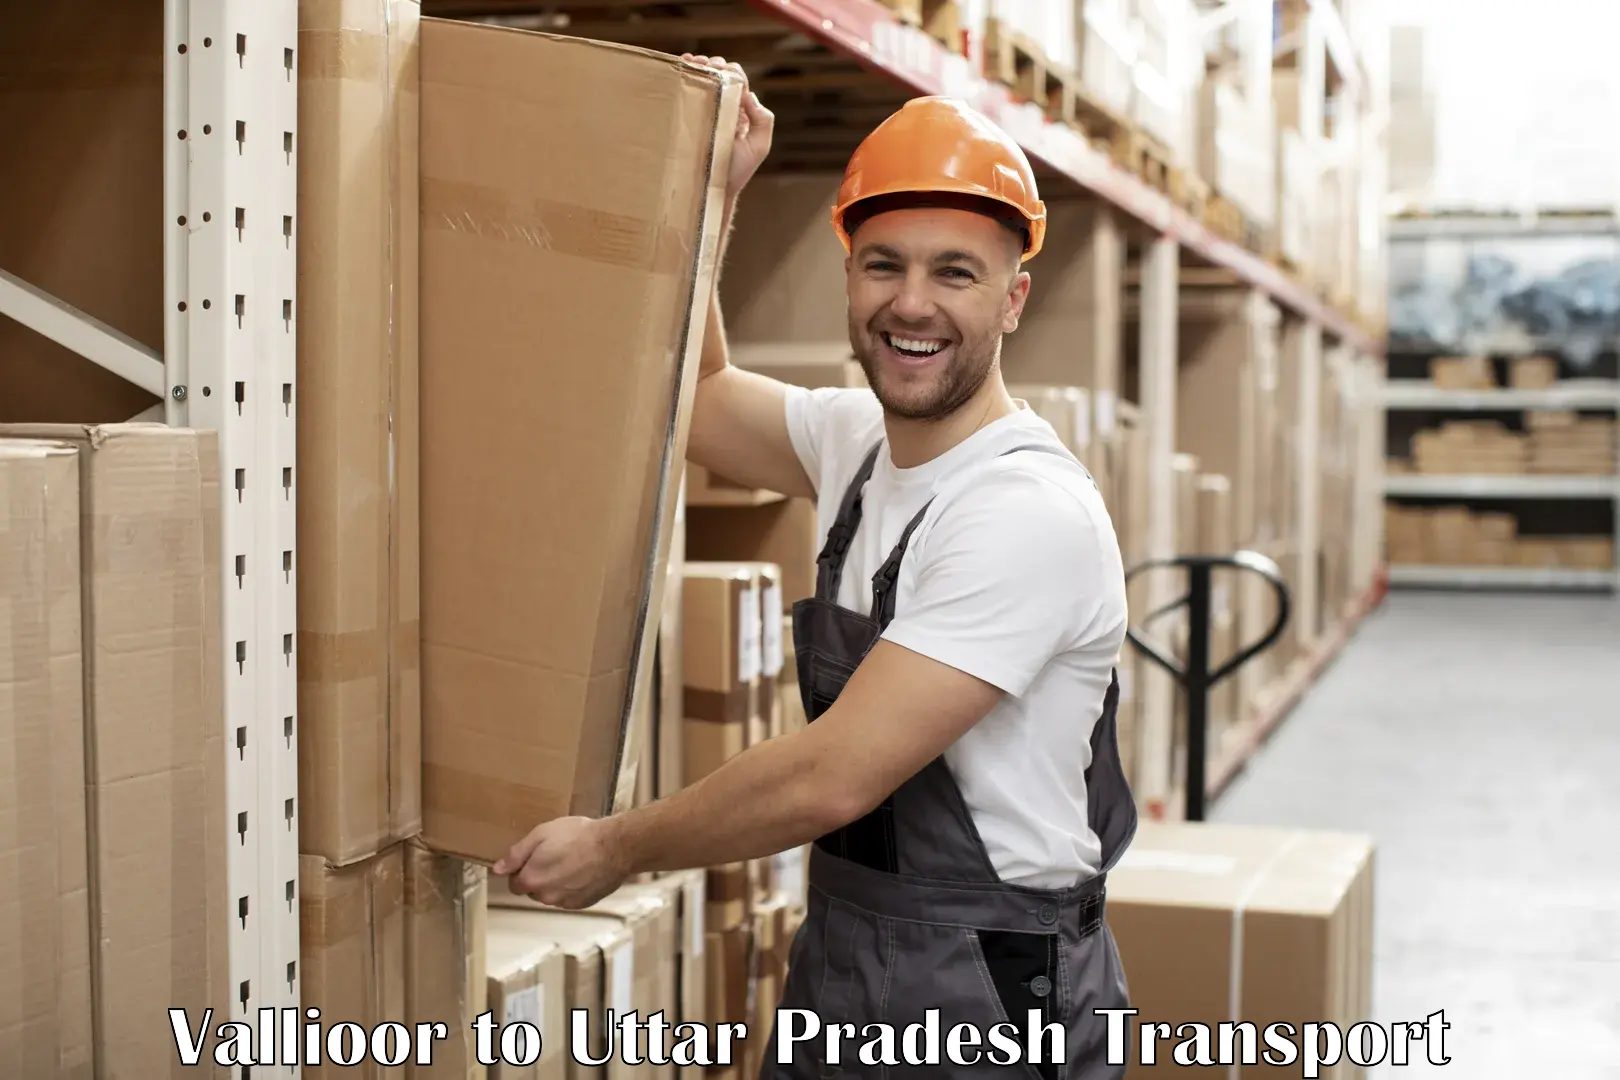 Goods delivery service Vallioor to IIT Varanasi